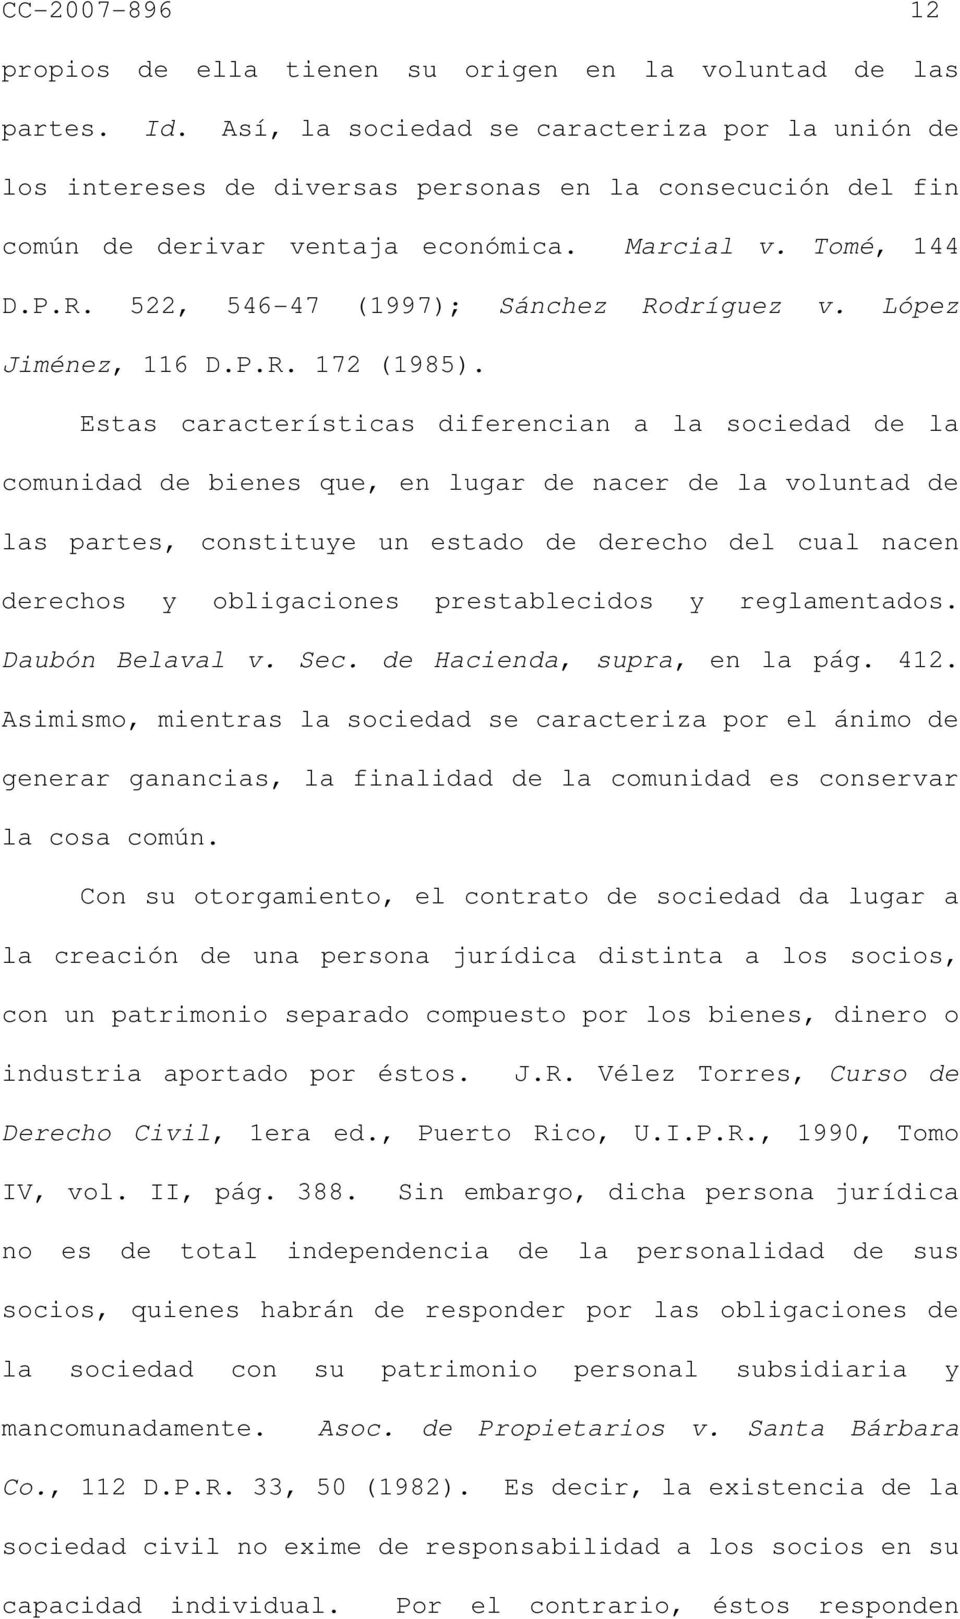 522, 546-47 (1997); Sánchez Rodríguez v. López Jiménez, 116 D.P.R. 172 (1985).